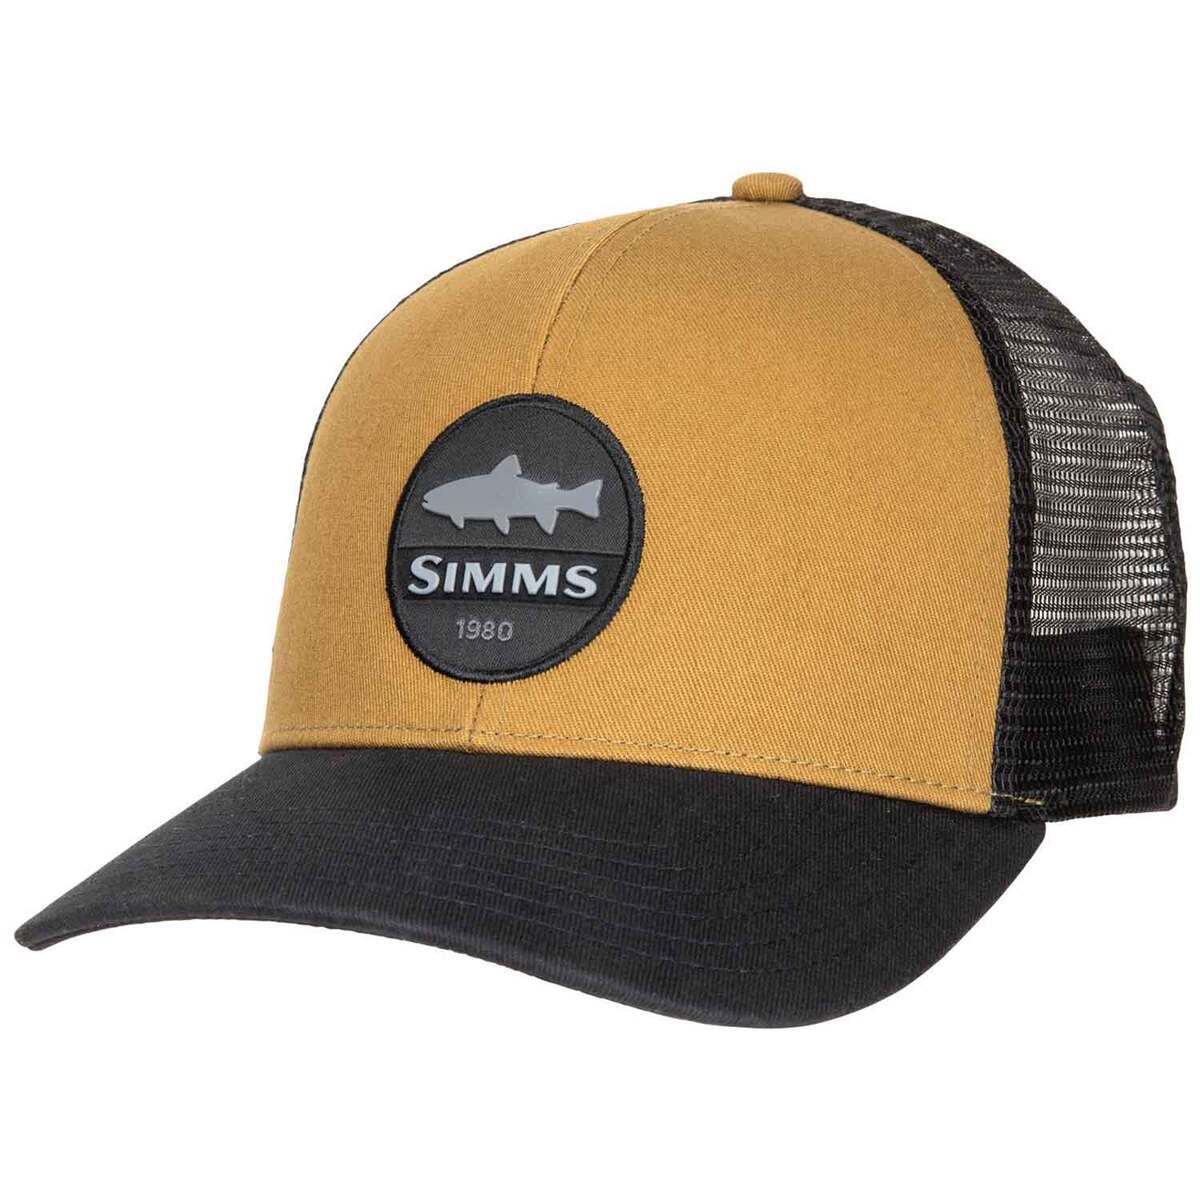 https://www.sportsmans.com/medias/simms-mens-trout-patch-trucker-hat-dark-bronze-1685904-1.jpg?context=bWFzdGVyfGltYWdlc3wxMTYzMDJ8aW1hZ2UvanBlZ3xhRGN5TDJnd1l5OHhNREE0T1RreU5UVXdPVEUxTUM4eE5qZzFPVEEwTFRGZlltRnpaUzFqYjI1MlpYSnphVzl1Um05eWJXRjBYekV5TURBdFkyOXVkbVZ5YzJsdmJrWnZjbTFoZEF8ZDc0OTc3ZTY2MWFhZWVlYzgzMGJlY2FmYjkwY2ZiYTdjNDZjODM1YmM4YzJjOGI2Y2Q1ZjIzNWNhMjVlZDgyYQ